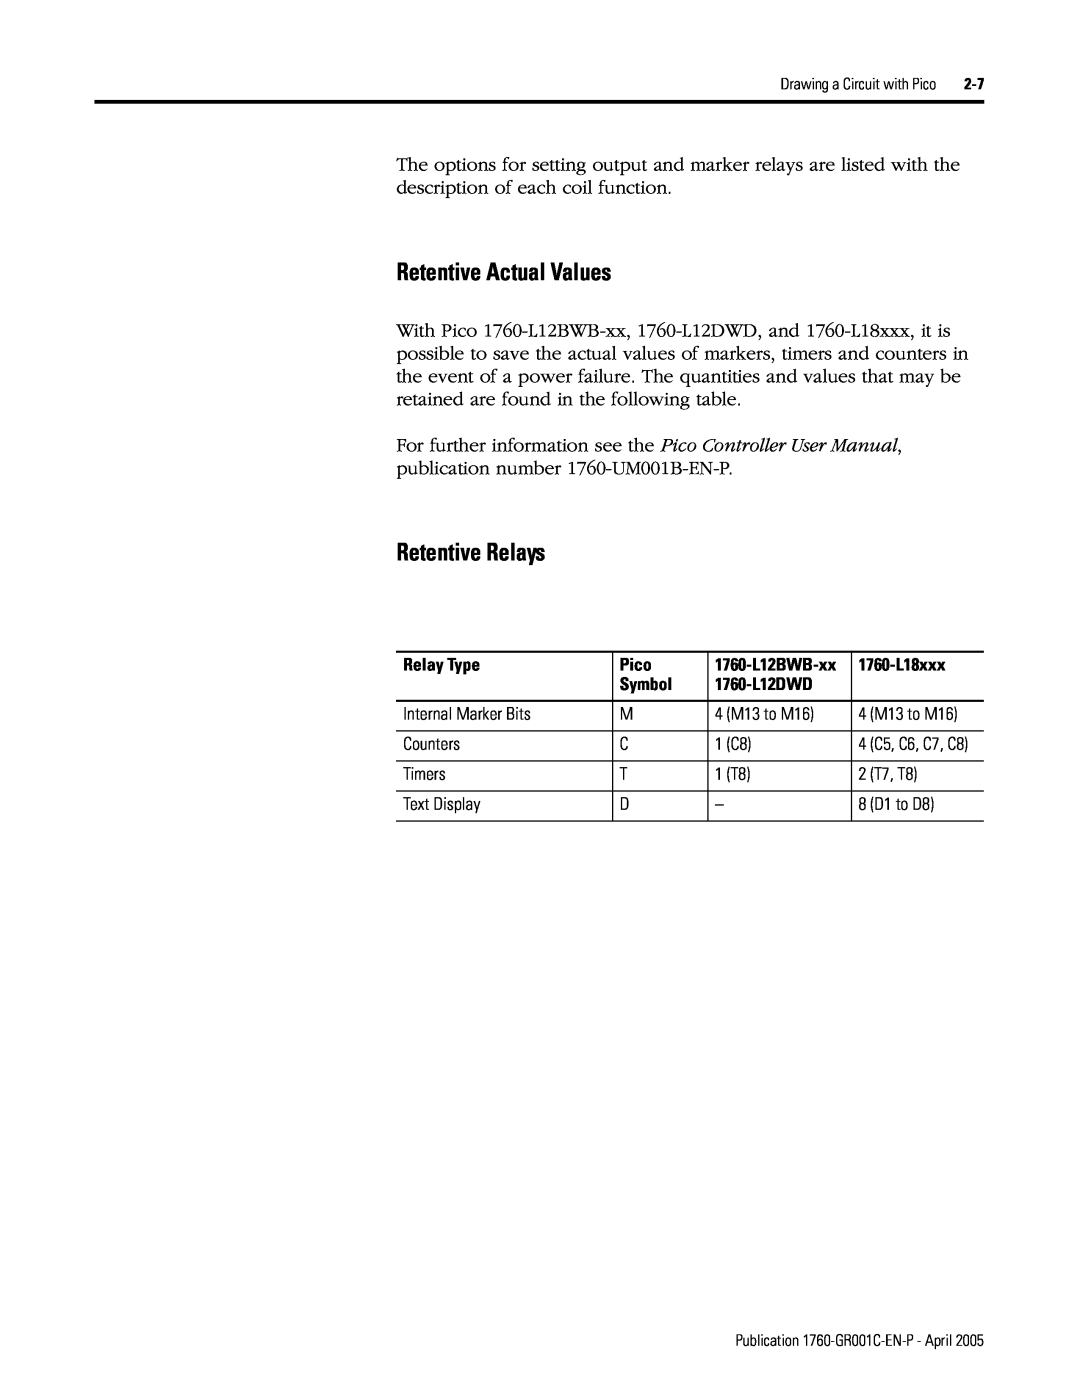 AB Soft manual Retentive Actual Values, Retentive Relays, 1760-L12BWB-xx 